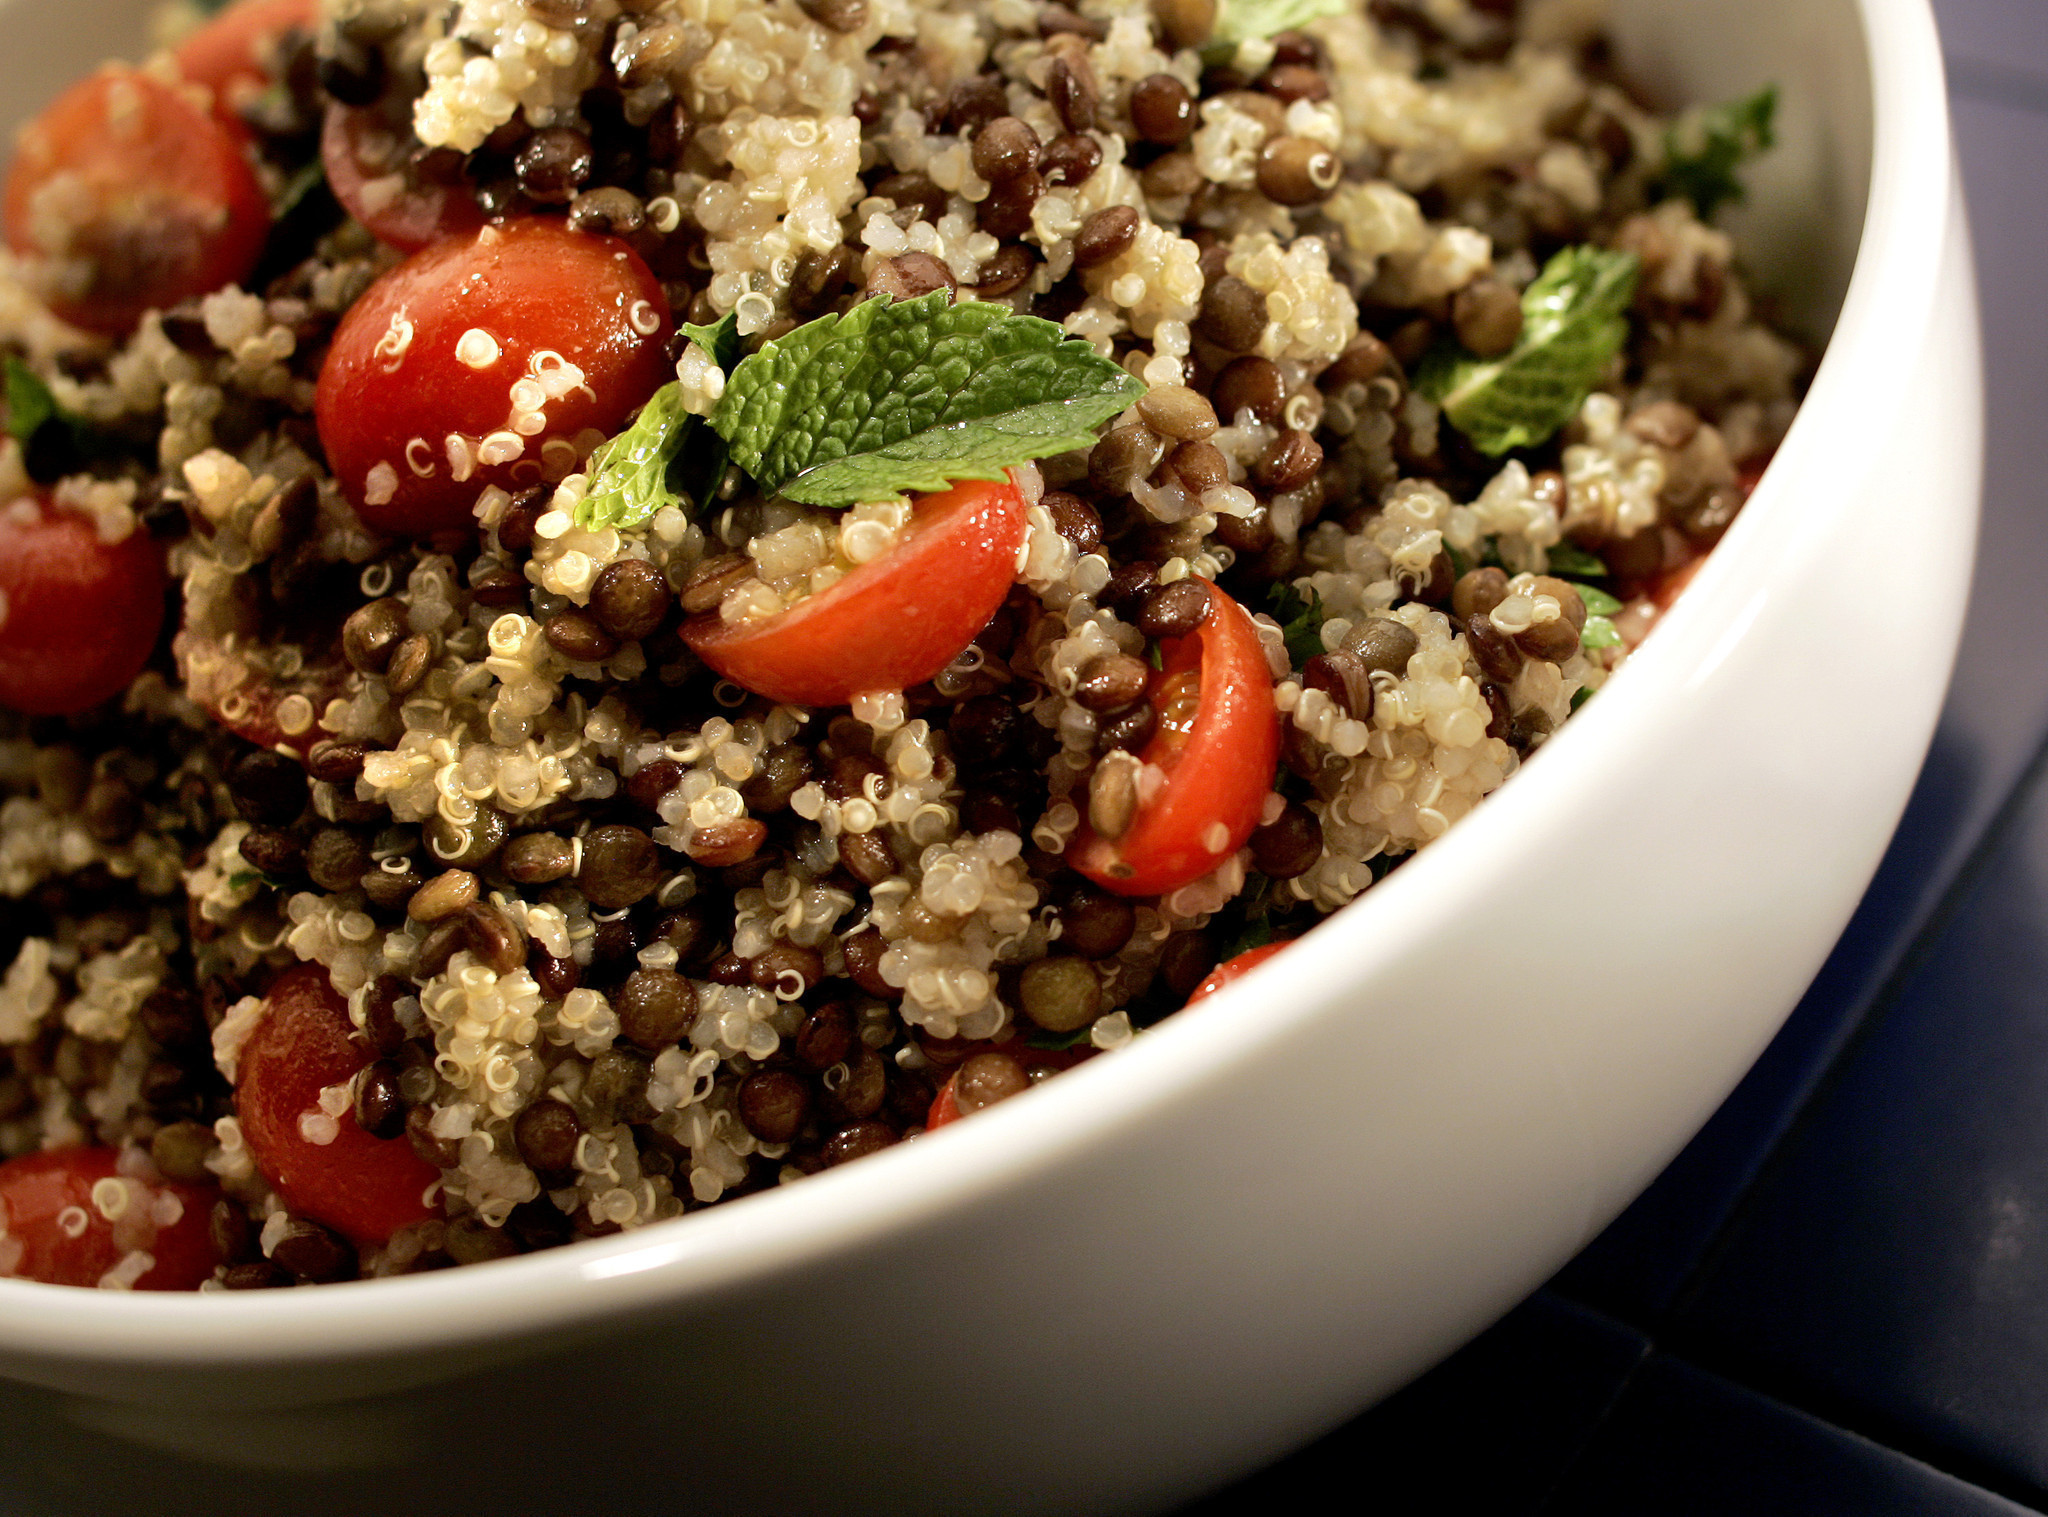 Quinoa Dinner Ideas
 Easy dinner recipes Three quinoa salad ideas for Gluten